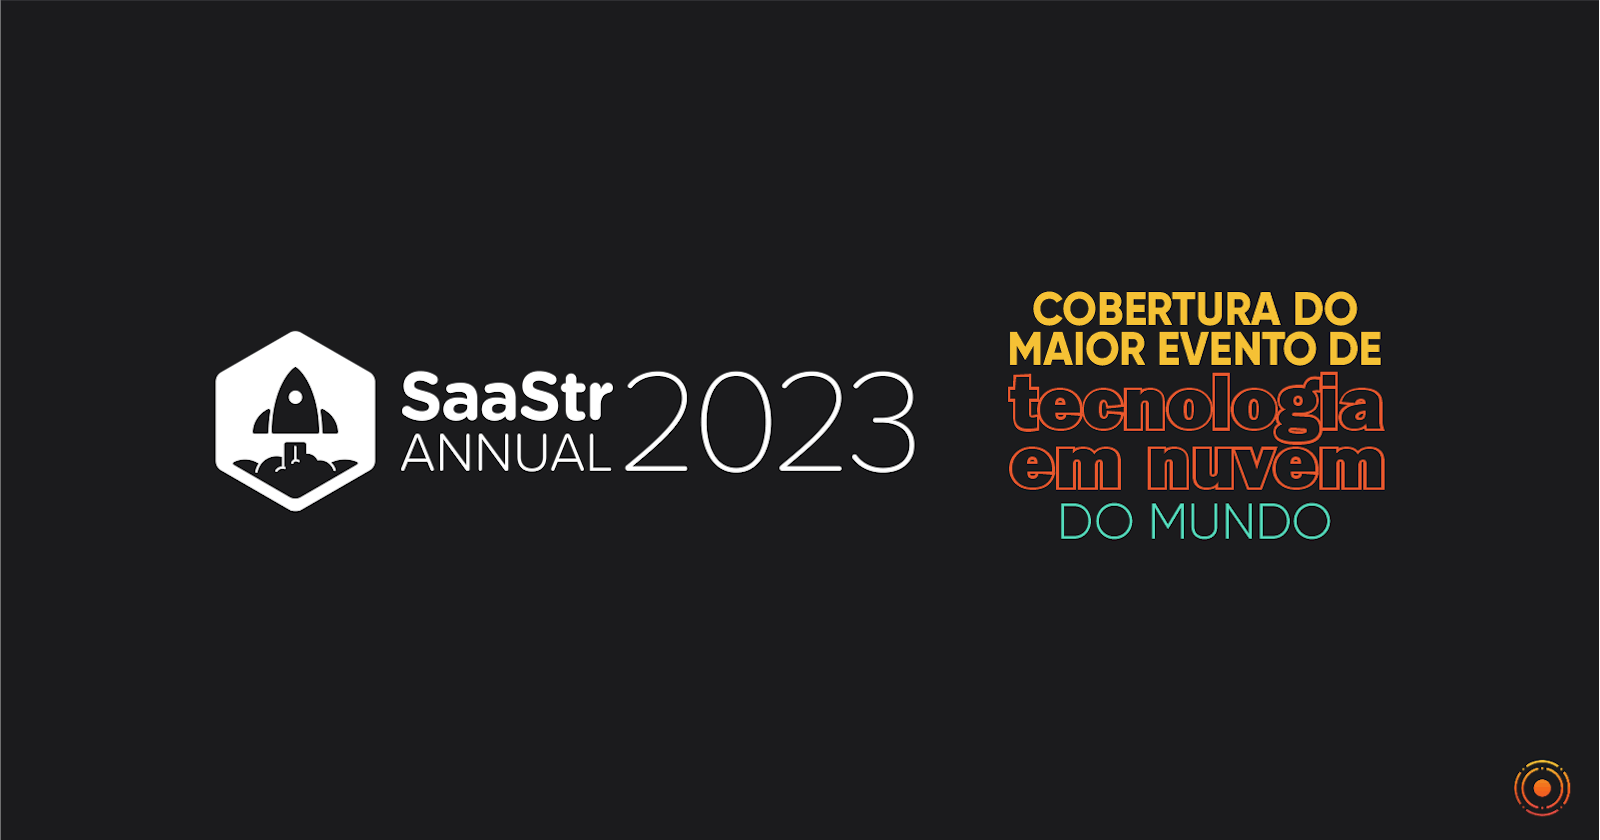 Saastr Annual 2023: cobertura do maior evento de tecnologia em nuvem do mundo